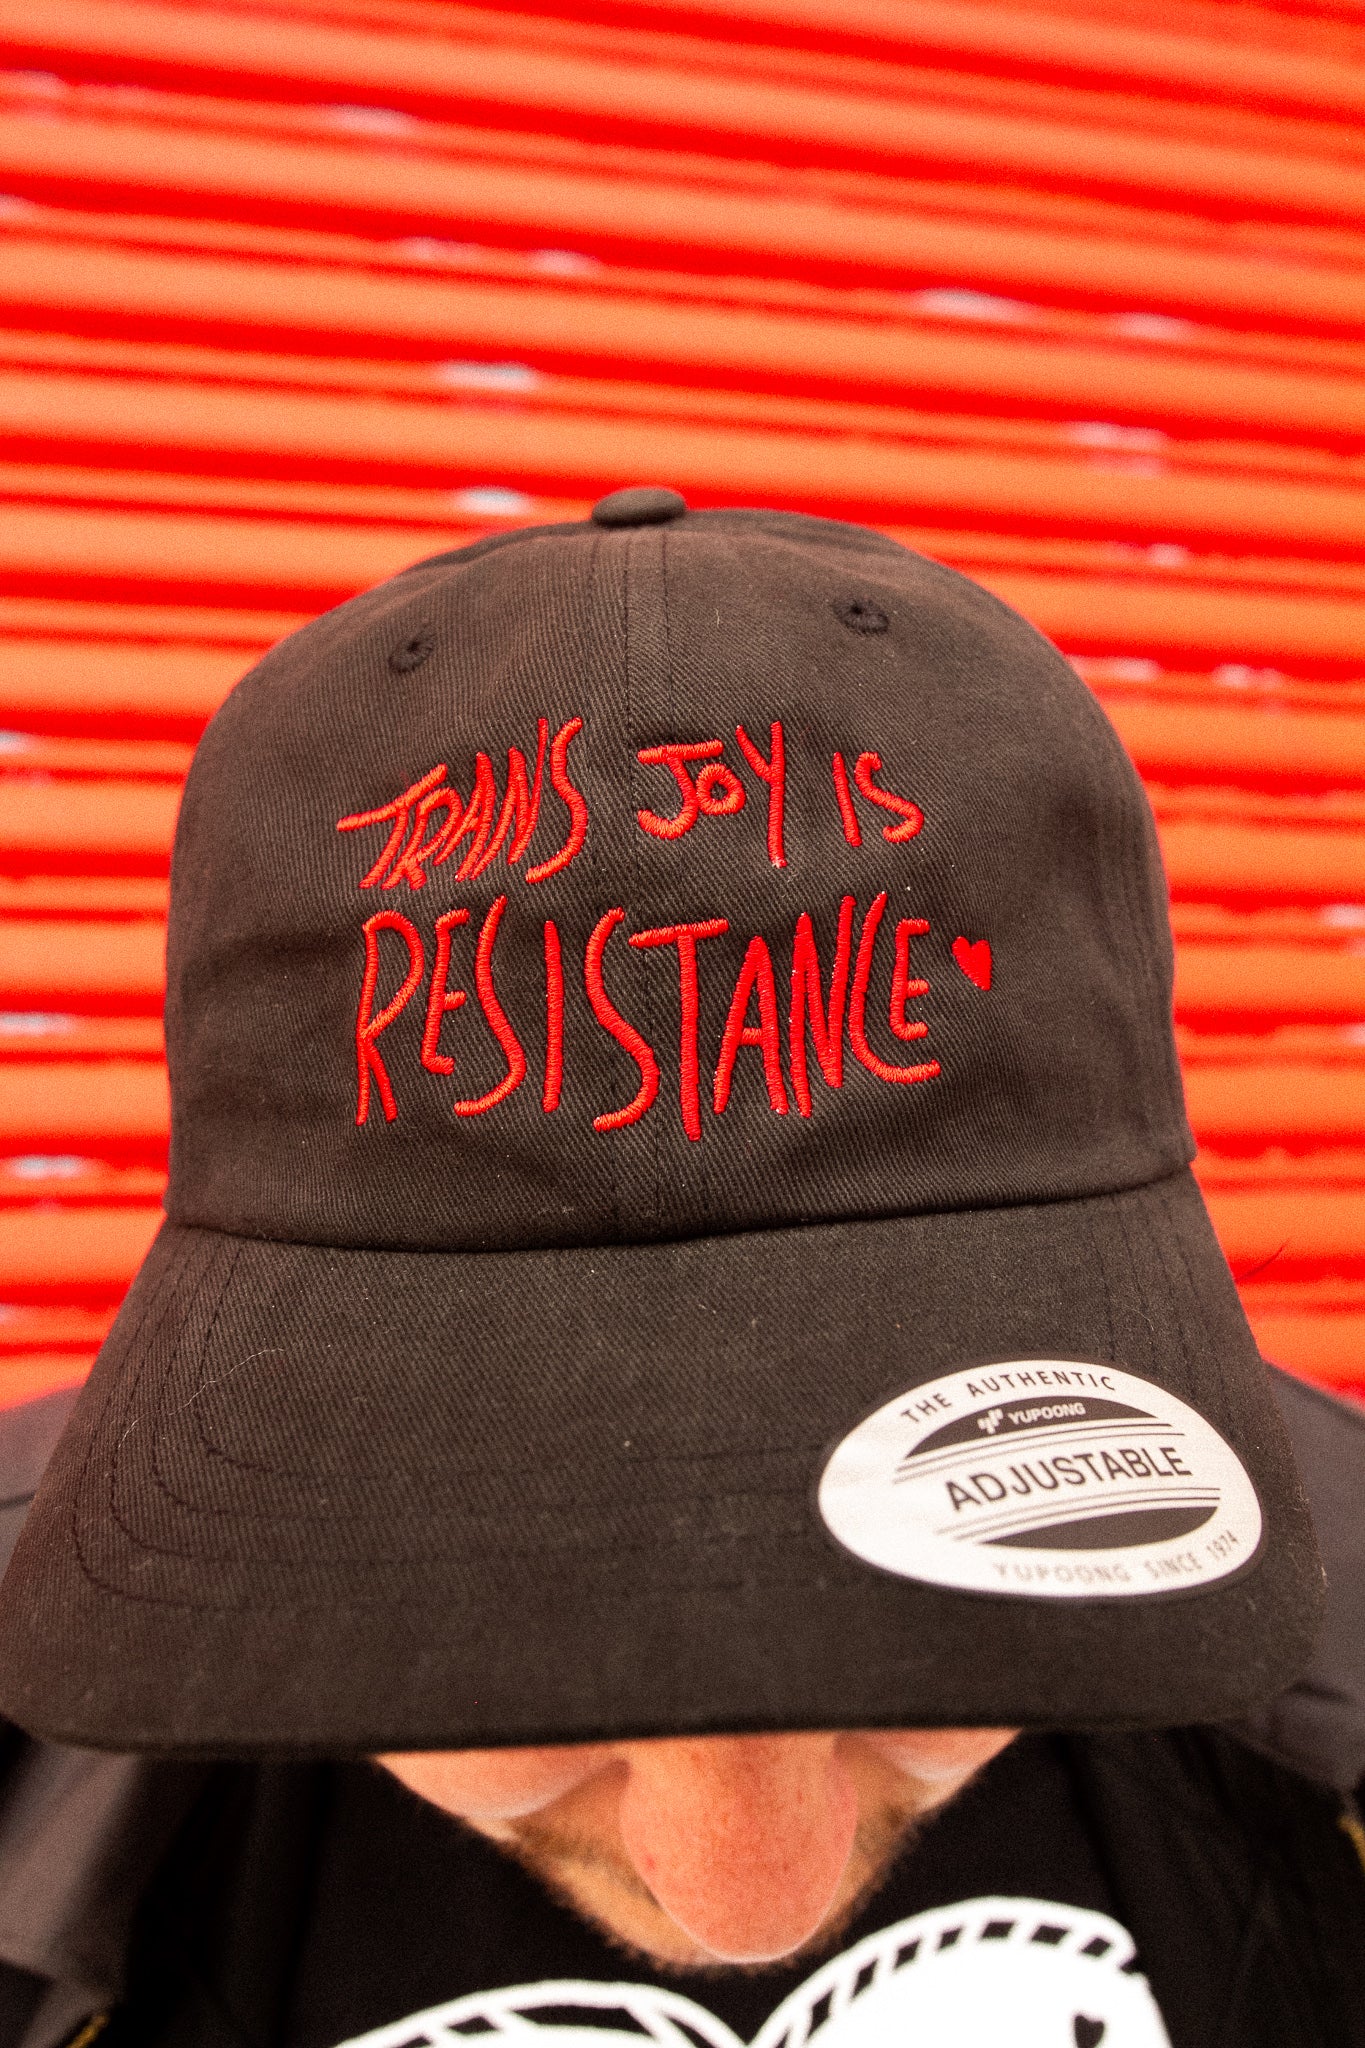 Trans Joy is Resistance Hat